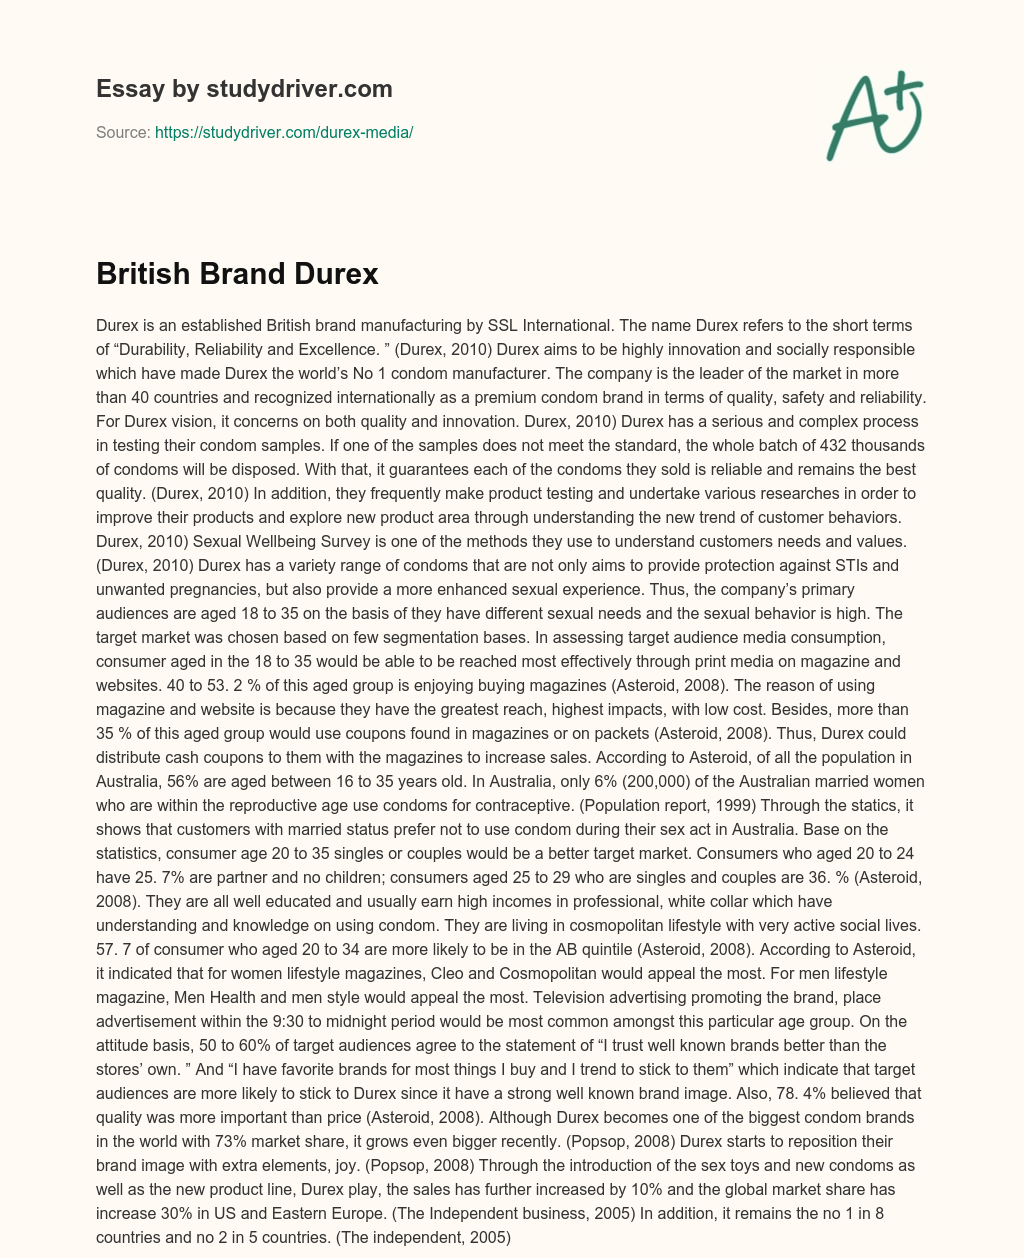 British Brand  Durex essay